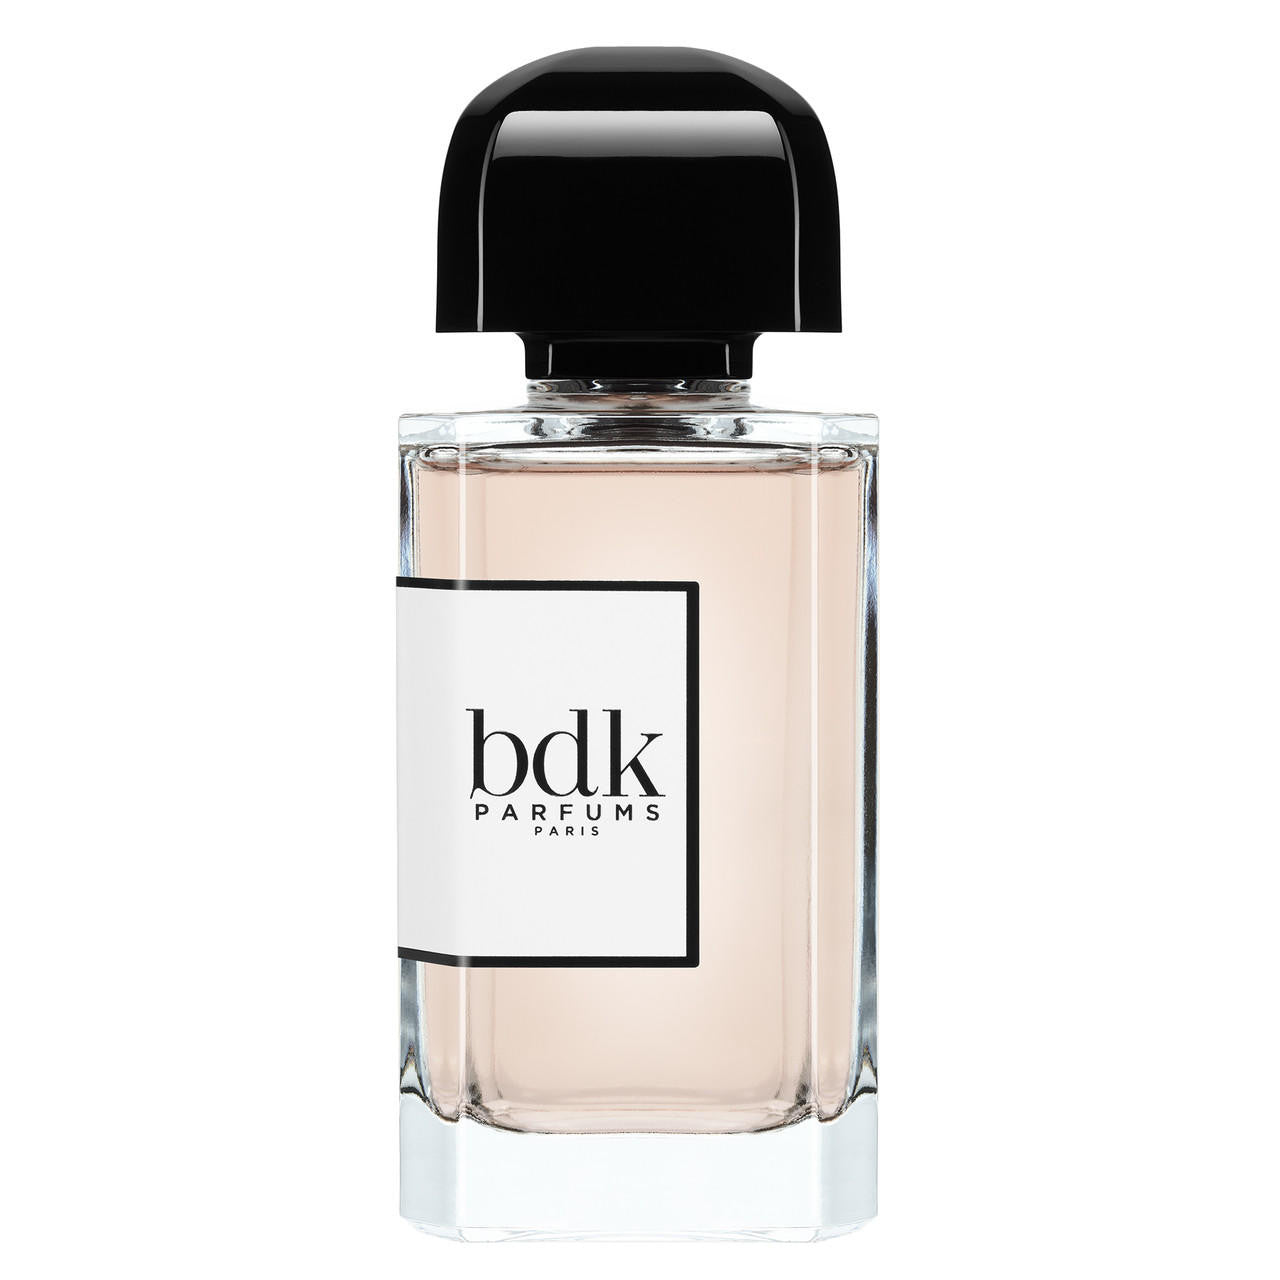 BDK Parfums Bdk Parfums 312 Saint-Honoré Eau de Parfum 